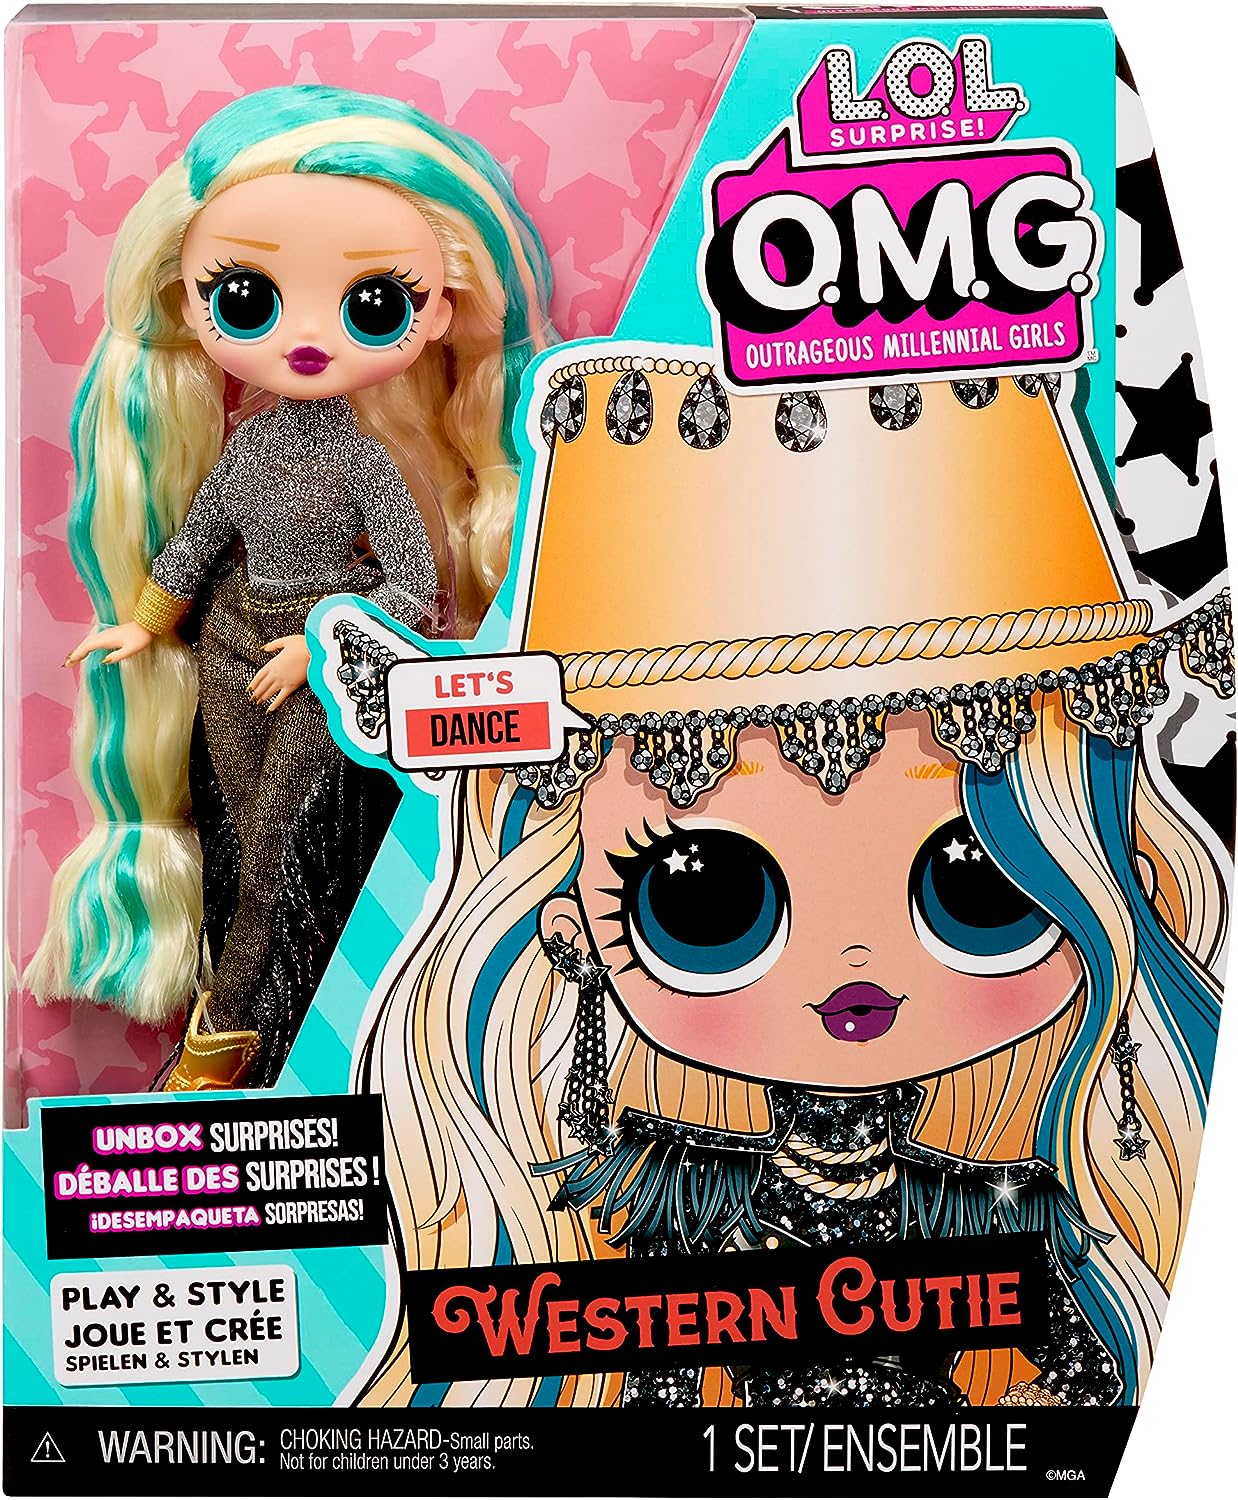 LOL Surprise Boneca da moda OMG - WESTERN CUTIE - Desembale surpresas e acessórios fabulosos - Inclui boneca da moda, roupa, acessórios e suporte para boneca - Ótimo presente para crianças de 4 anos ou mais